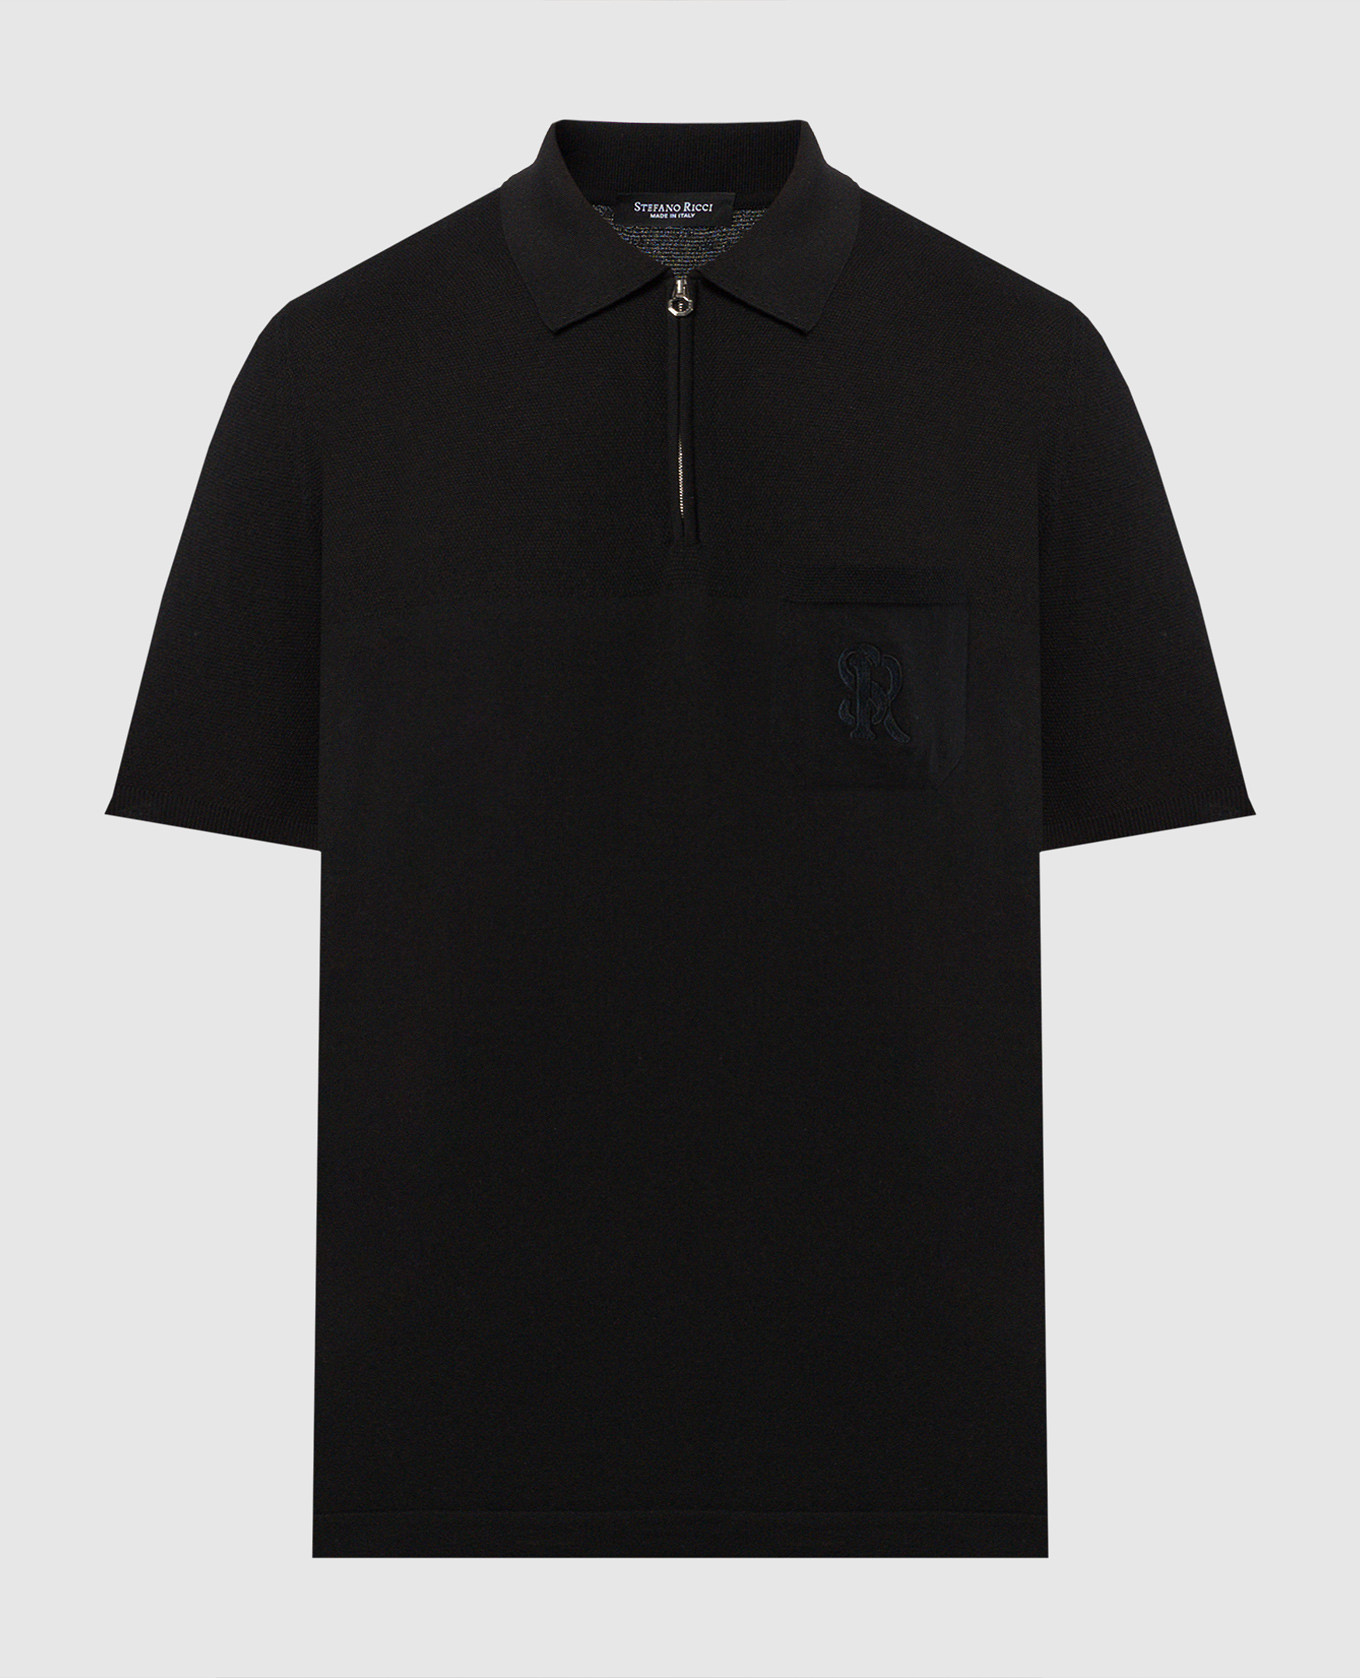 Черное поло с шелком с вышивкой логотипа монограммы.